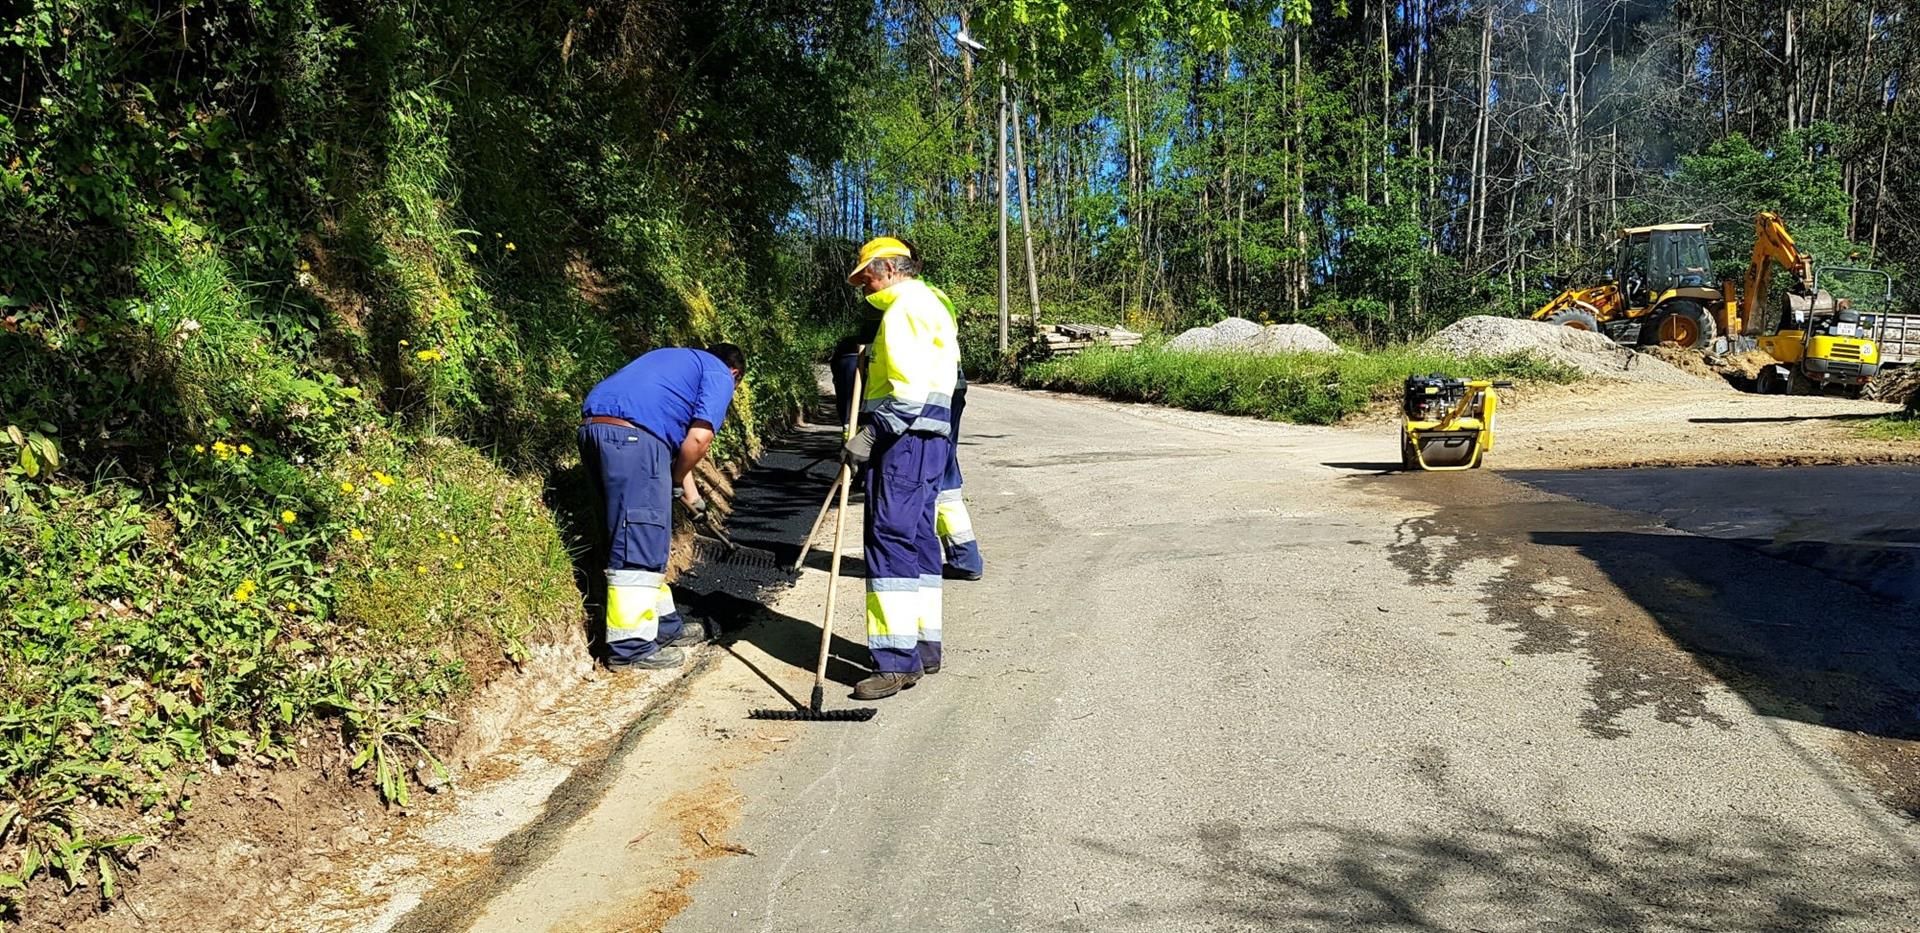 Unas obras en el asfaltado para detectar lindano / Foto: EP